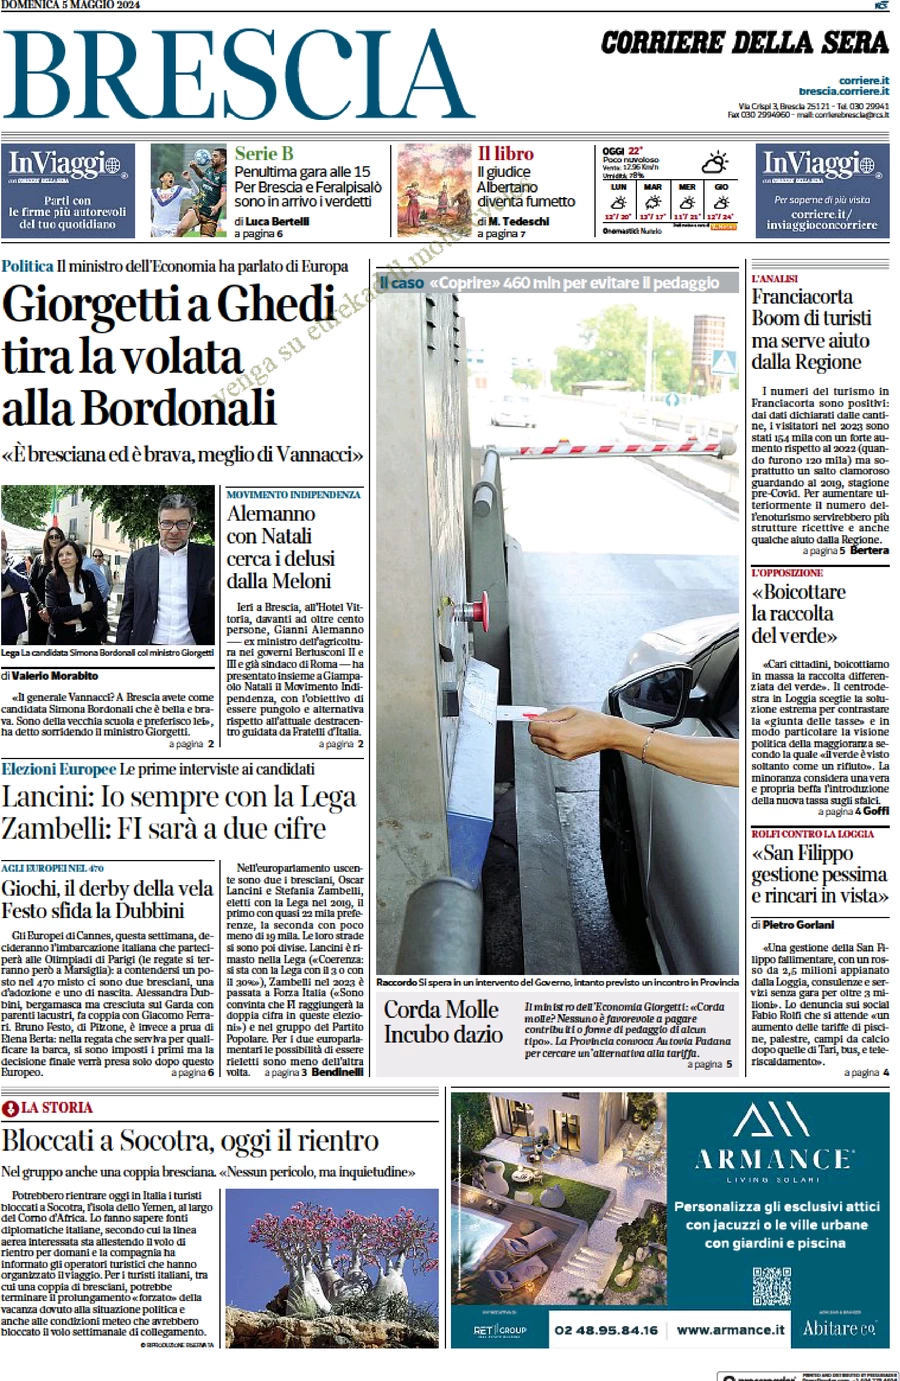 anteprima della prima pagina di Corriere della Sera (Brescia)